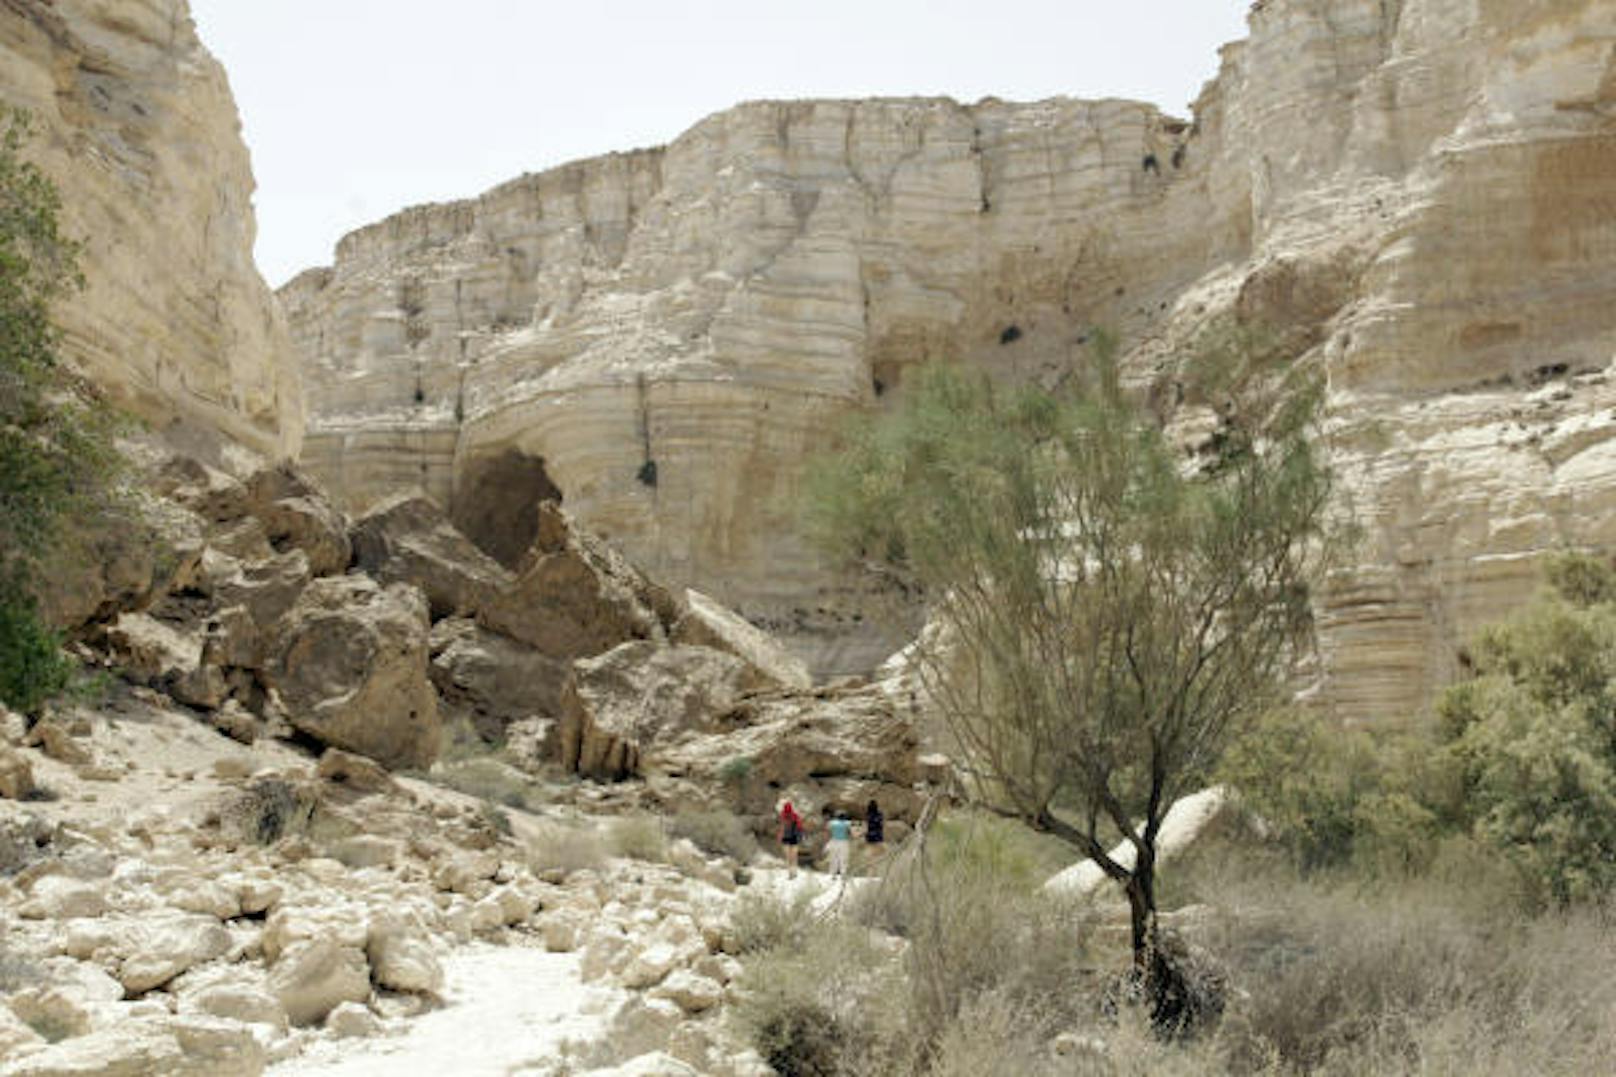 Der Nationalpark Ein Avdat in der Wüste Negev. Wasser hat über Jahrtausende einen tiefen Canyon in das Kalkgestein geschnitten.
